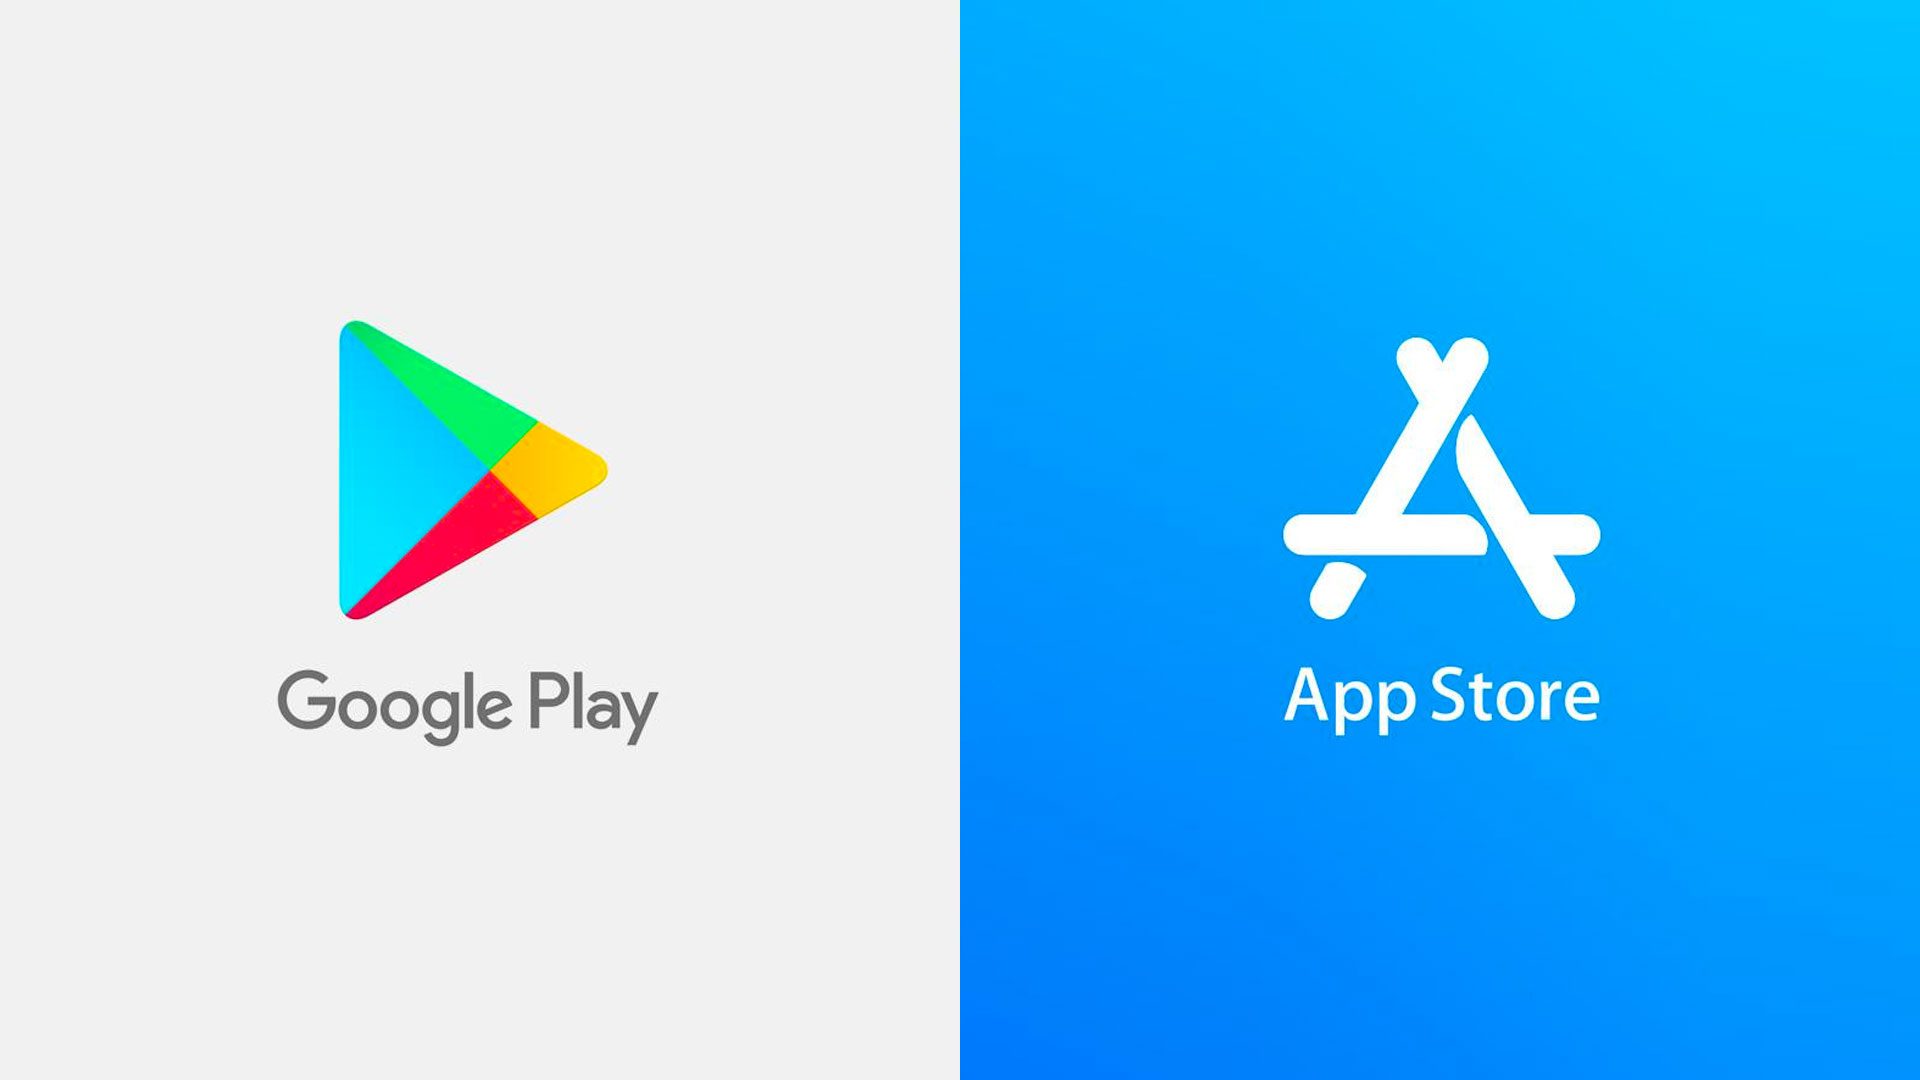 Google play na sivom pozadí a App Store na modrom pozadí